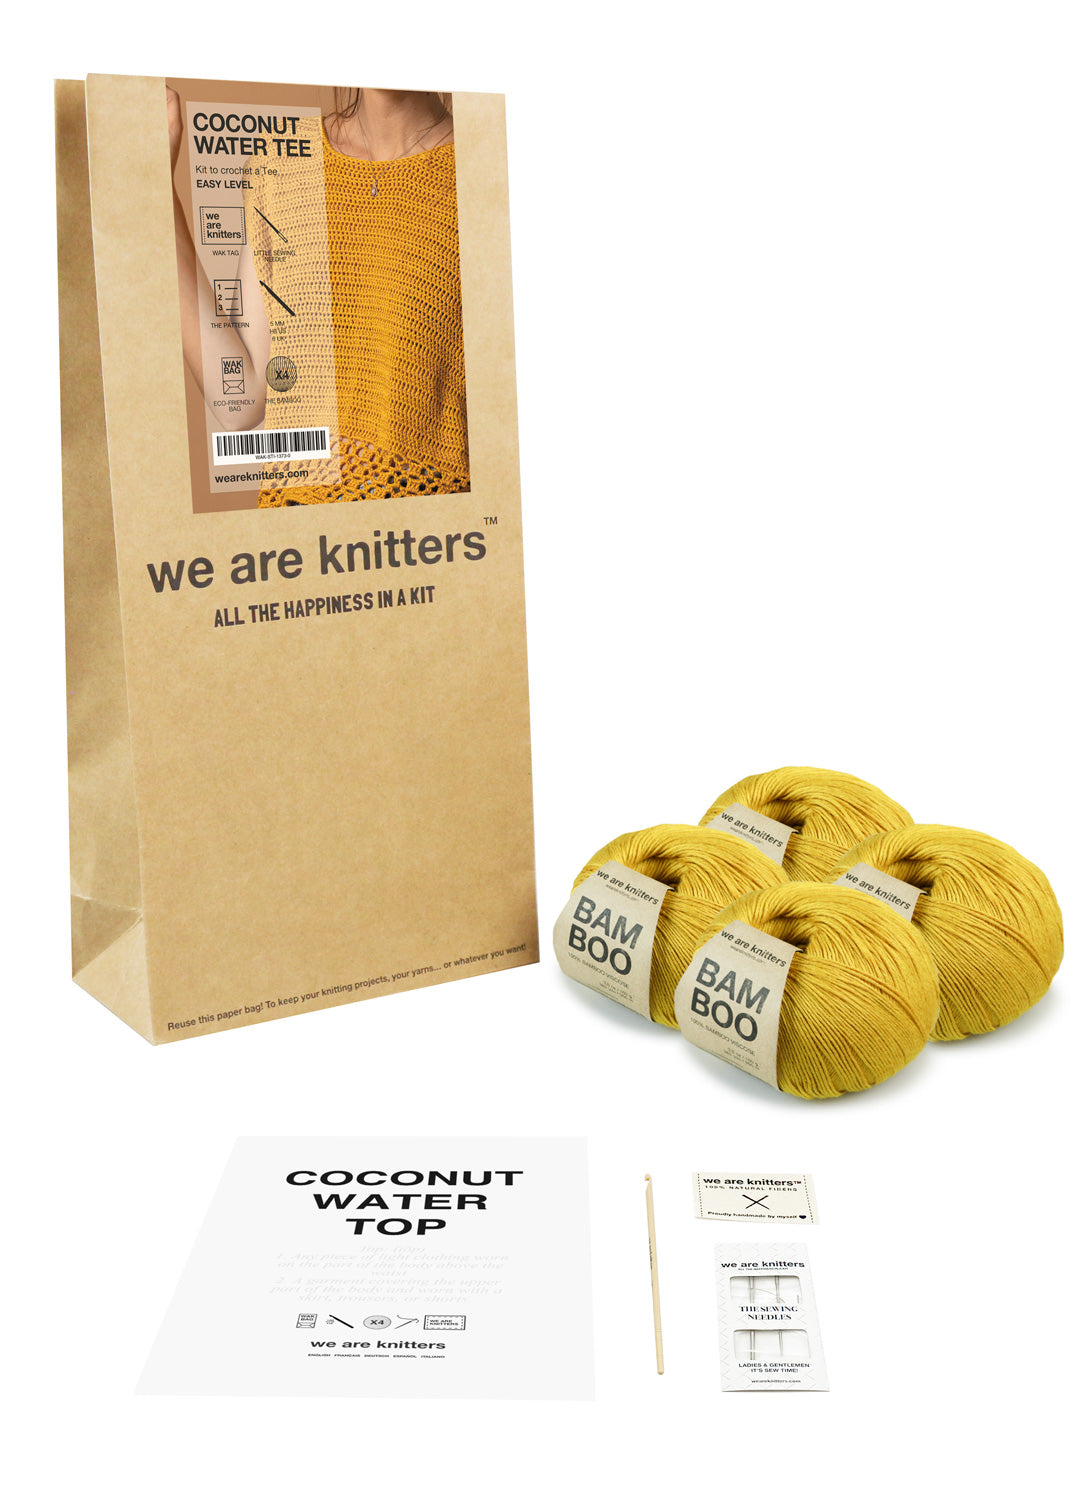 DIY Crochet Kit: Gold Cat